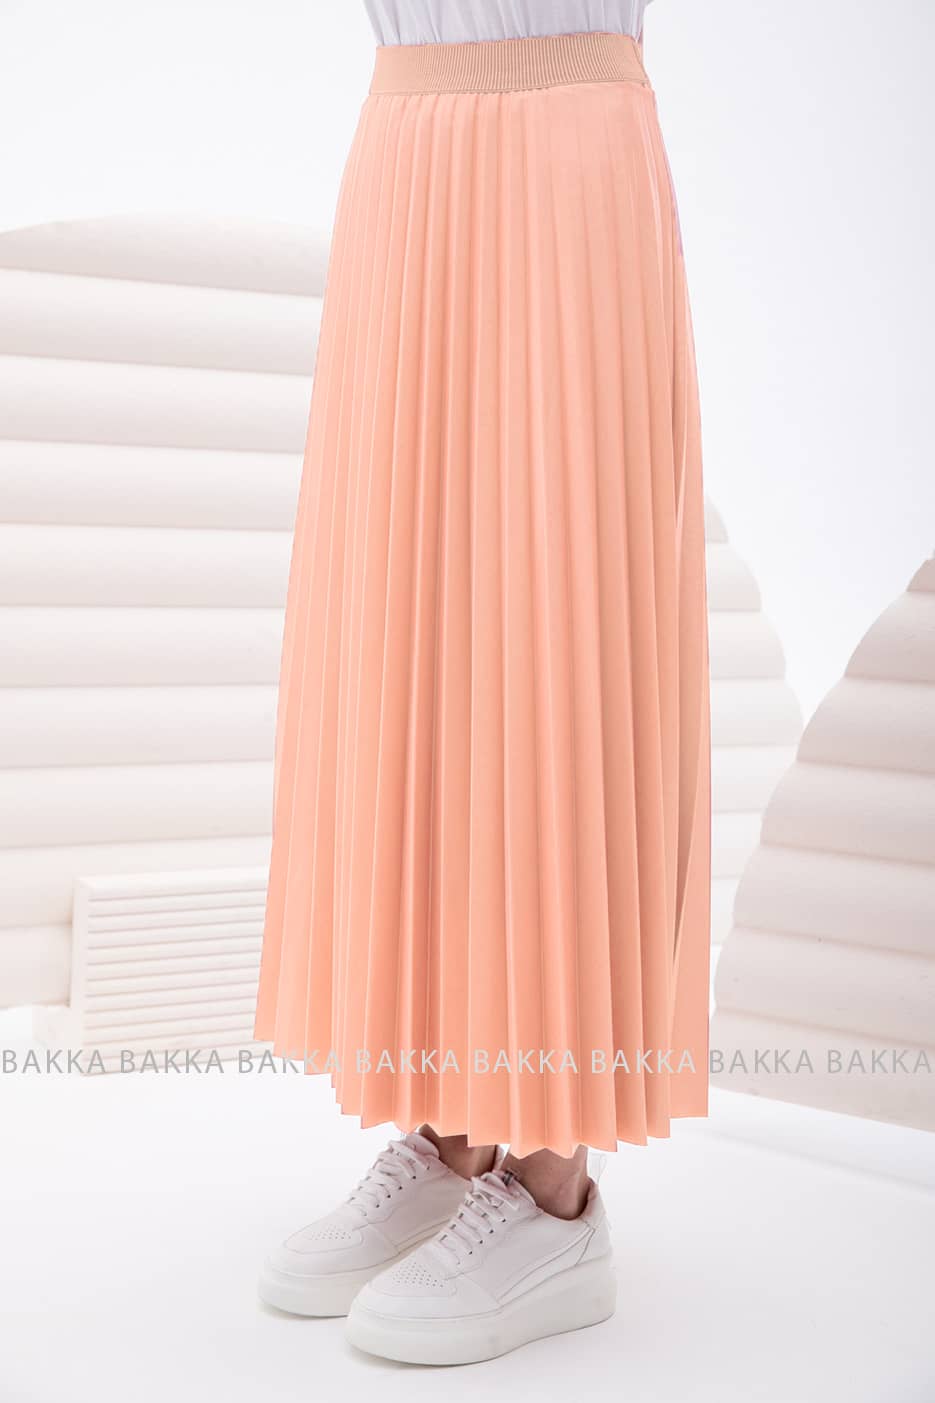 Skirt - 2170 - Light orange - bakkaclothing